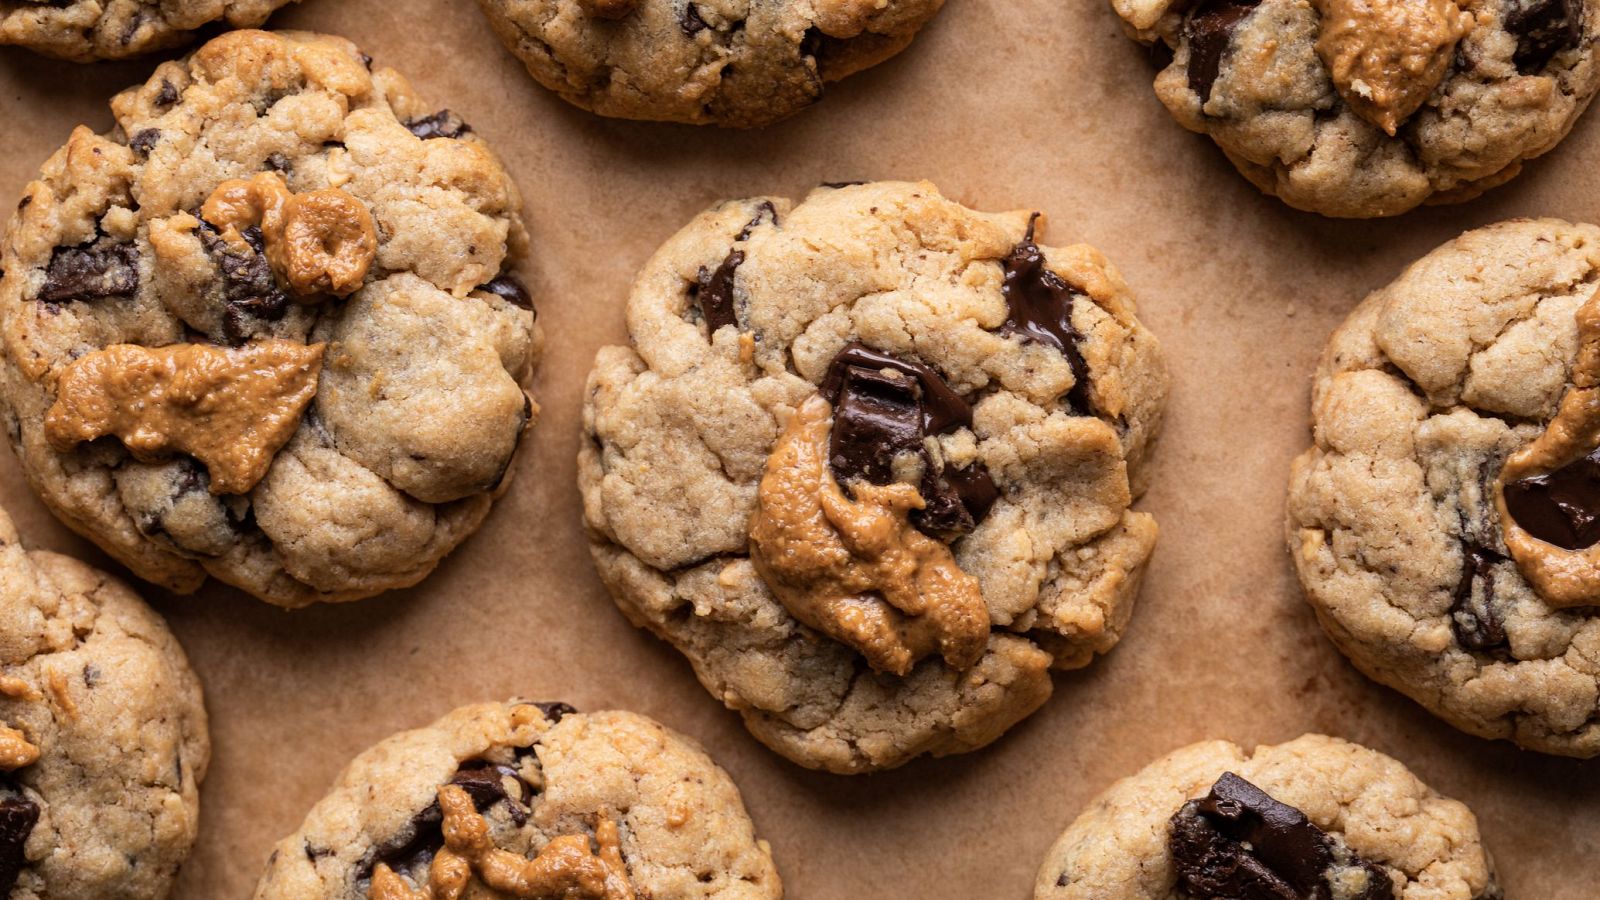 Cookies con pepitas de chocolate al microondas en 3 minutos